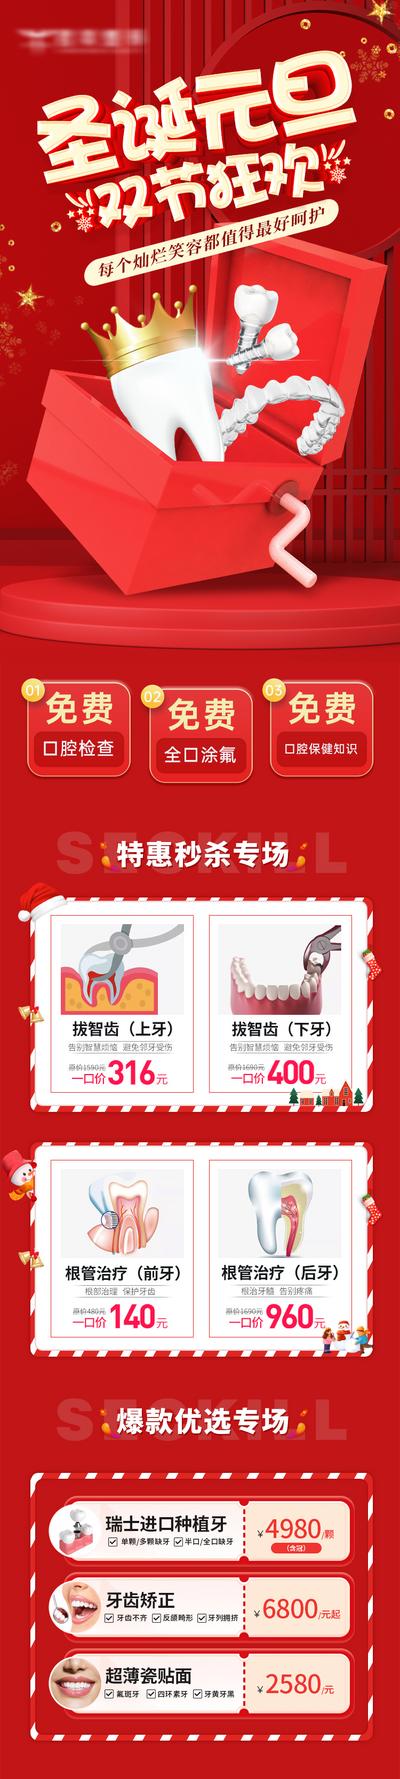 南门网 长图 活动 促销 元旦 红金 专题设计 饮料 口腔 公历节日 圣诞节 双节